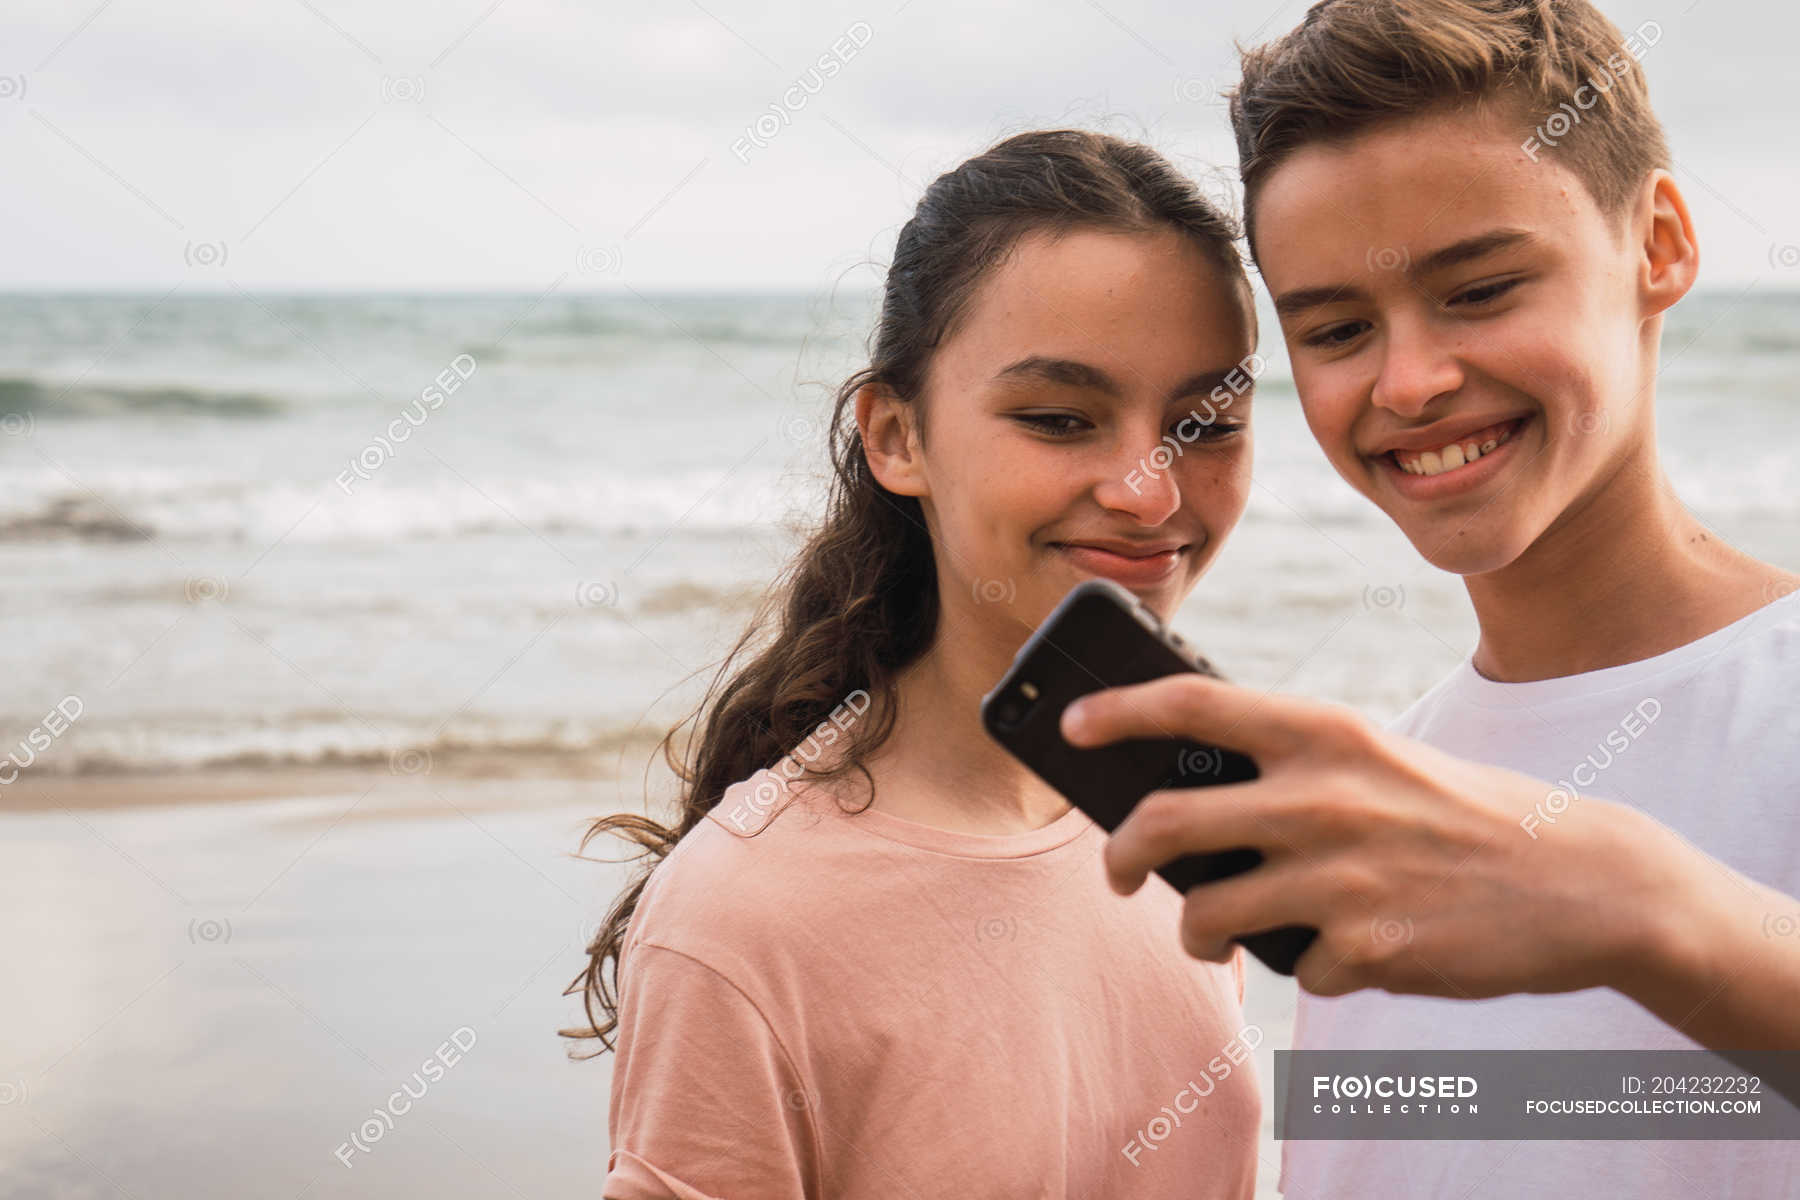 Teen girl and boy shaging